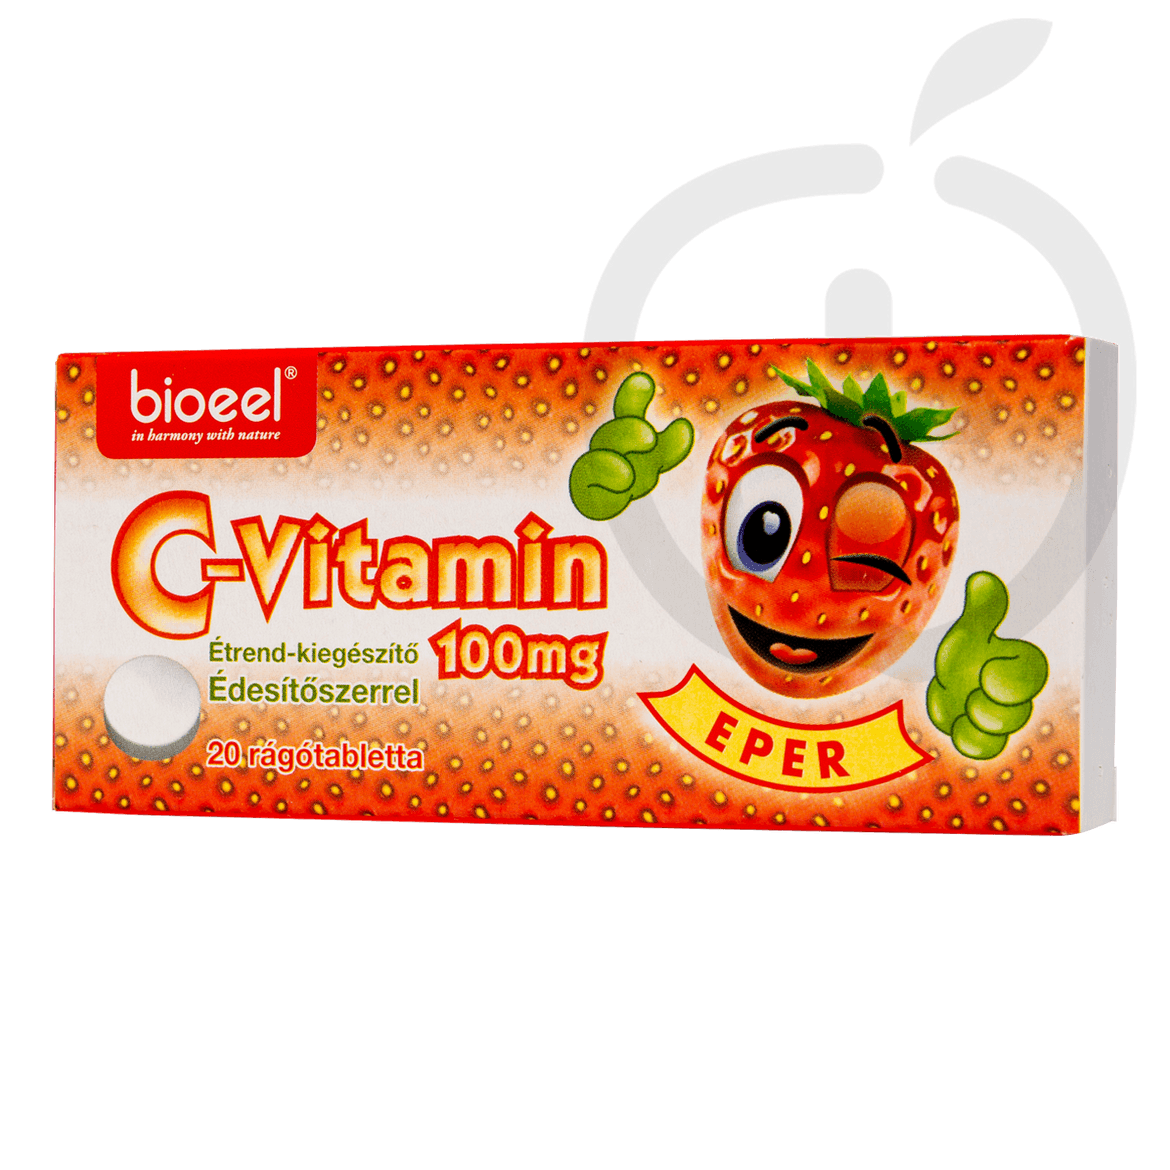 Bioeel C-vitamin 100 mg eper ízű rágótabletta 20 db